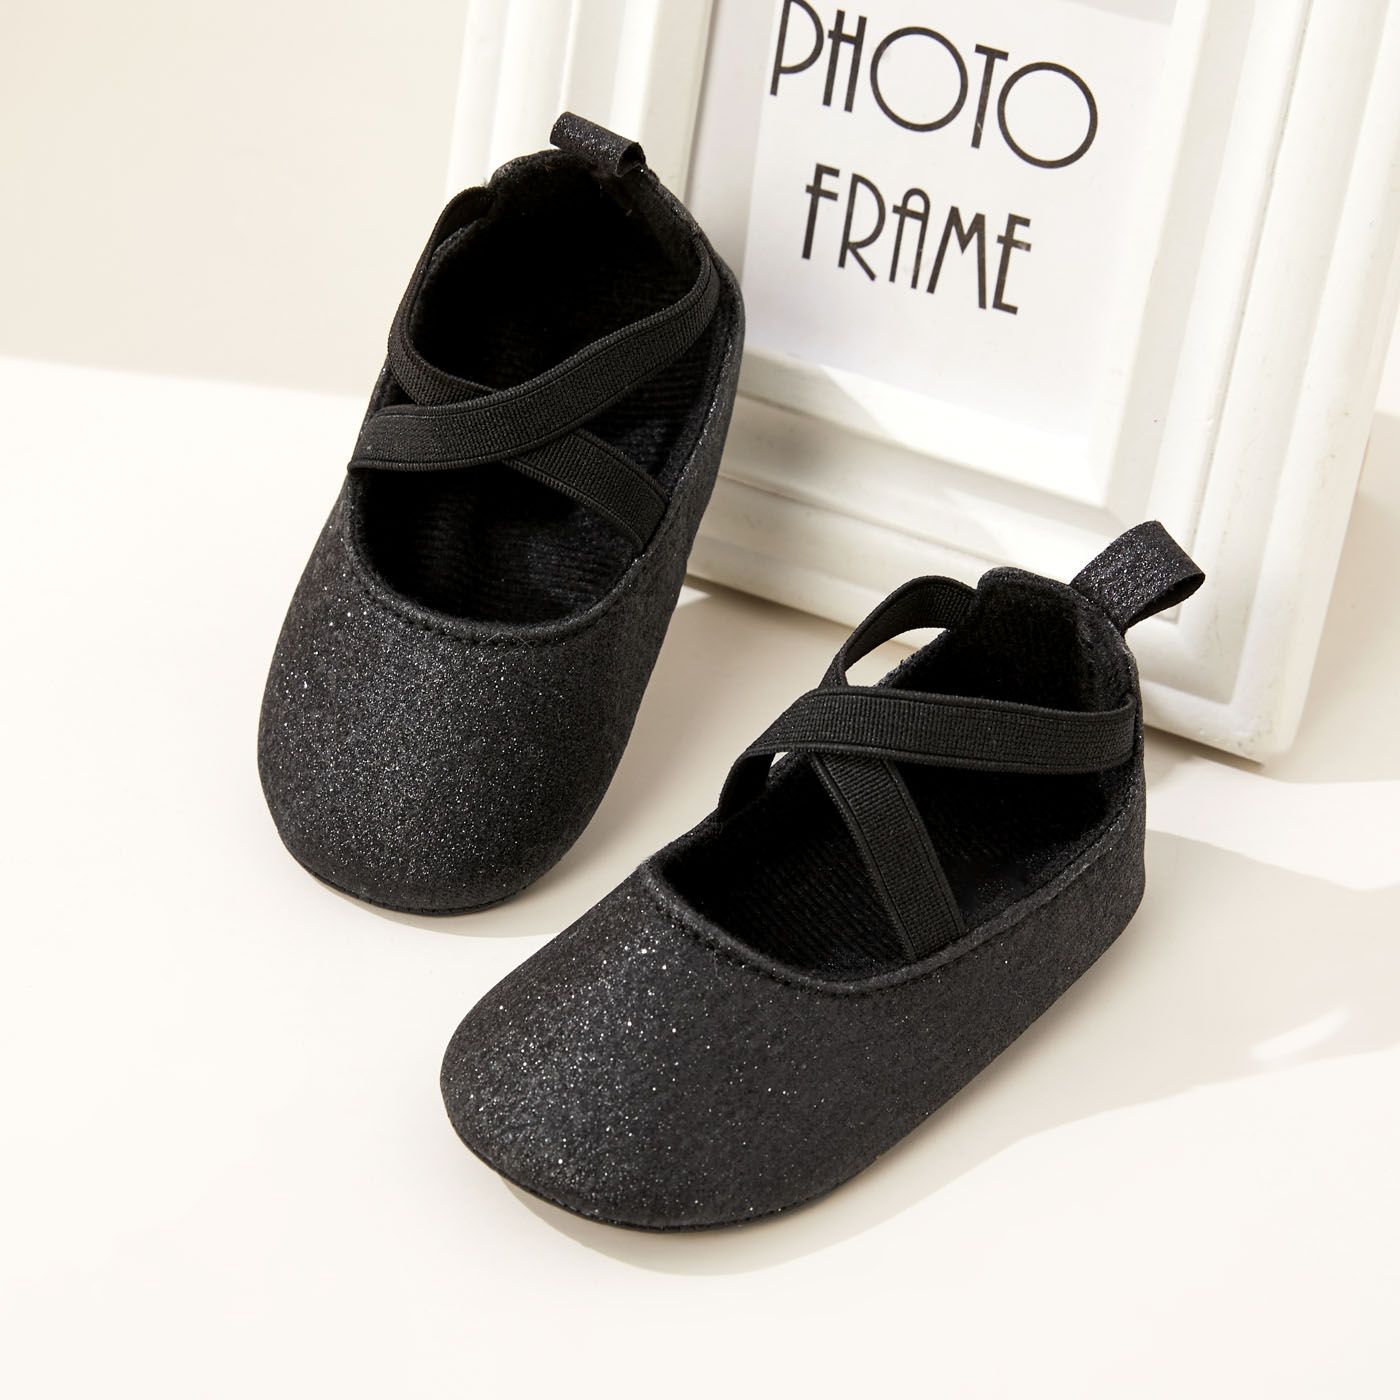 Baby / Toddler Solid Color Crisscross Slip-on Prewalker Shoes